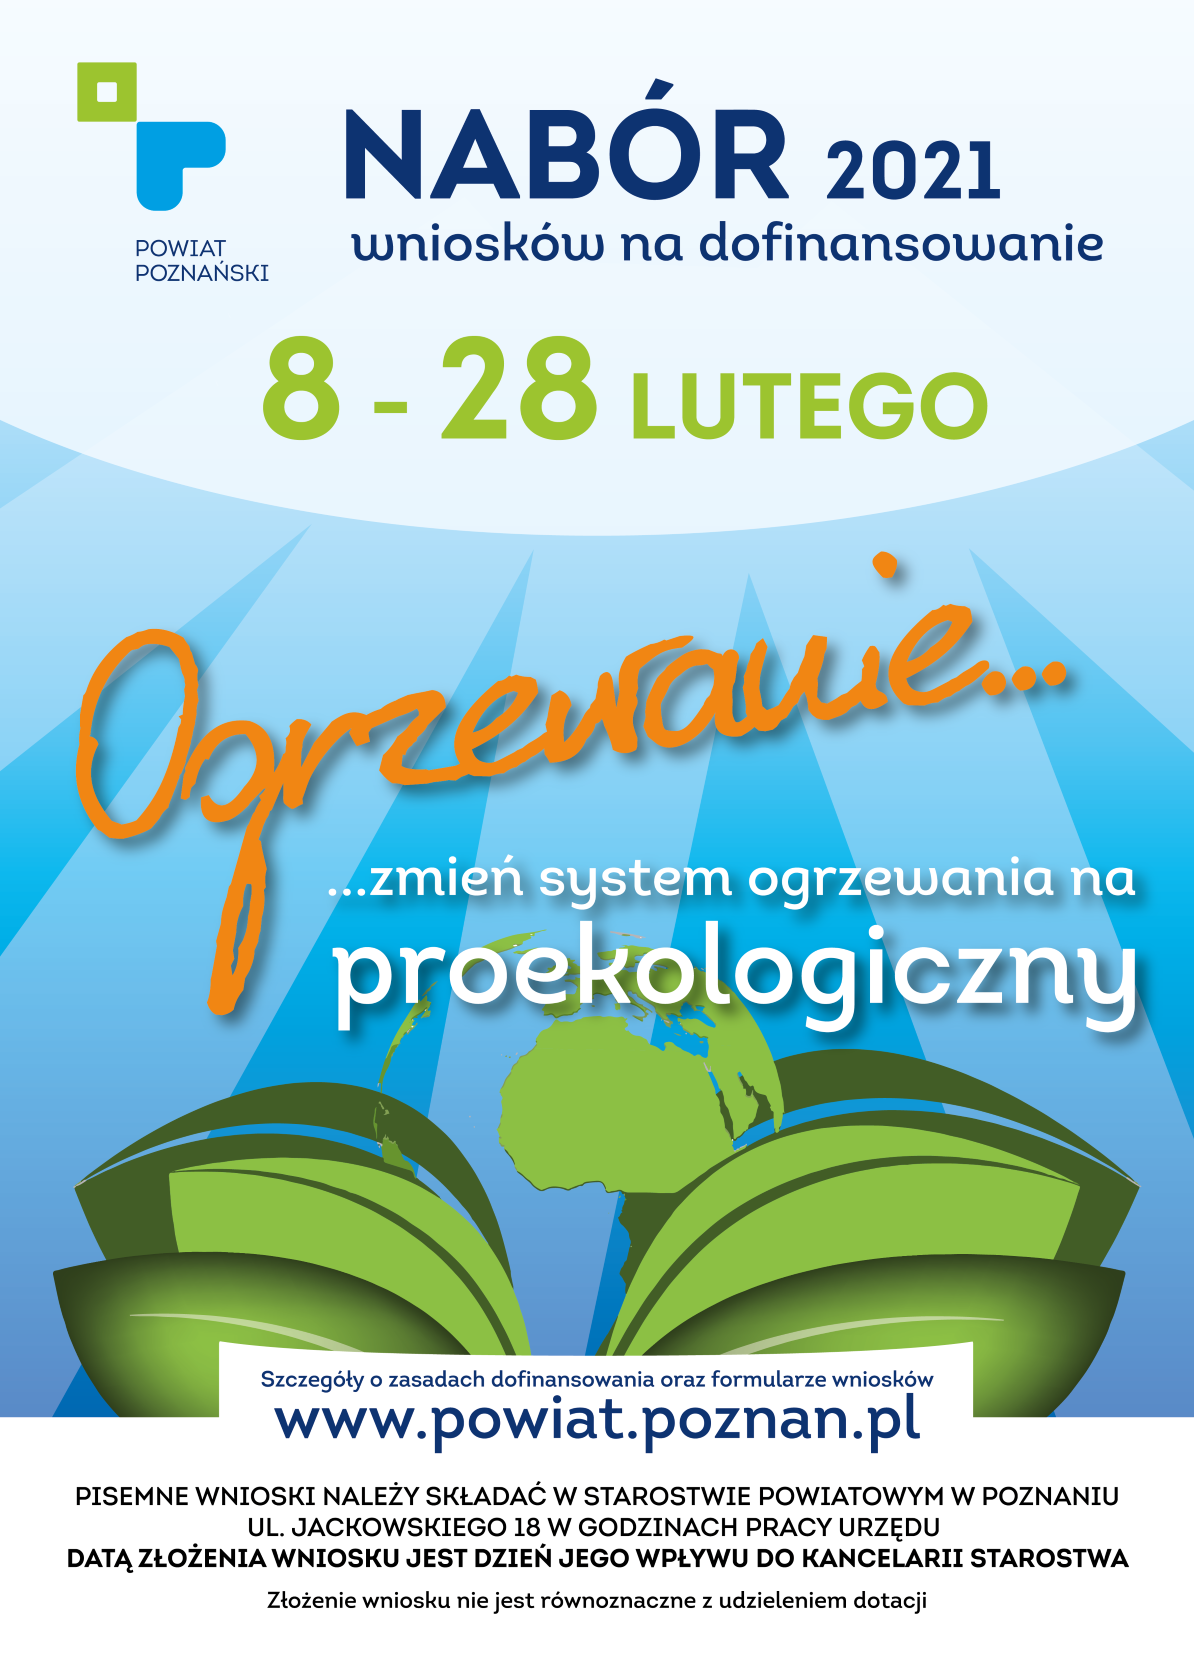 plakat informujący o naborze wniosków na dofinansowanie zmiany systemów ogrzewania www.powiat.poznanski.pl